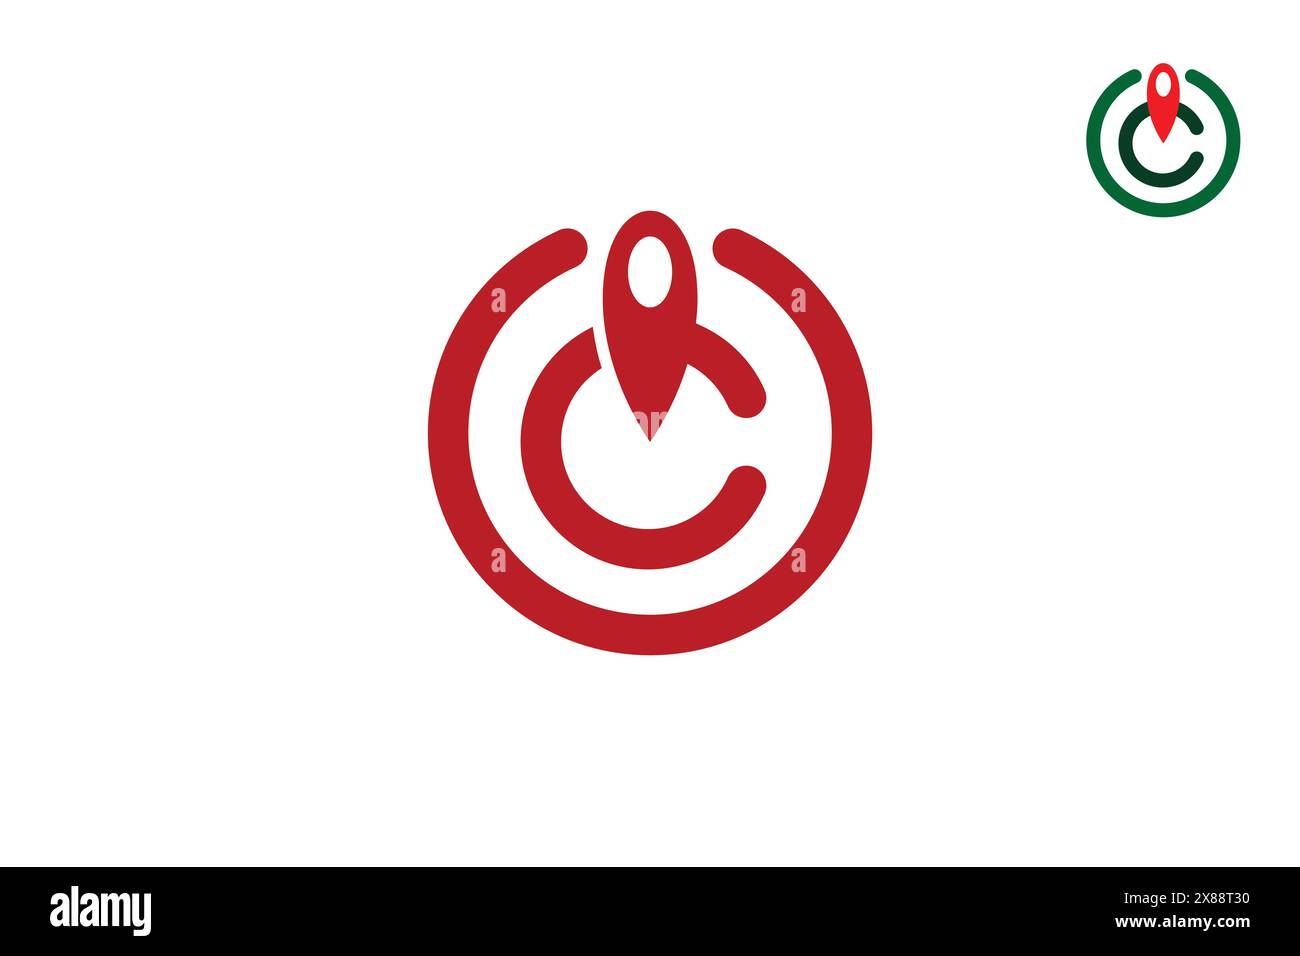 Lettre C pointeur logo ligne Style d'art de ligne de logo de lettre C avec concept de conception d'icône d'épingle d'emplacement ou point de rencontre. Illustration de Vecteur